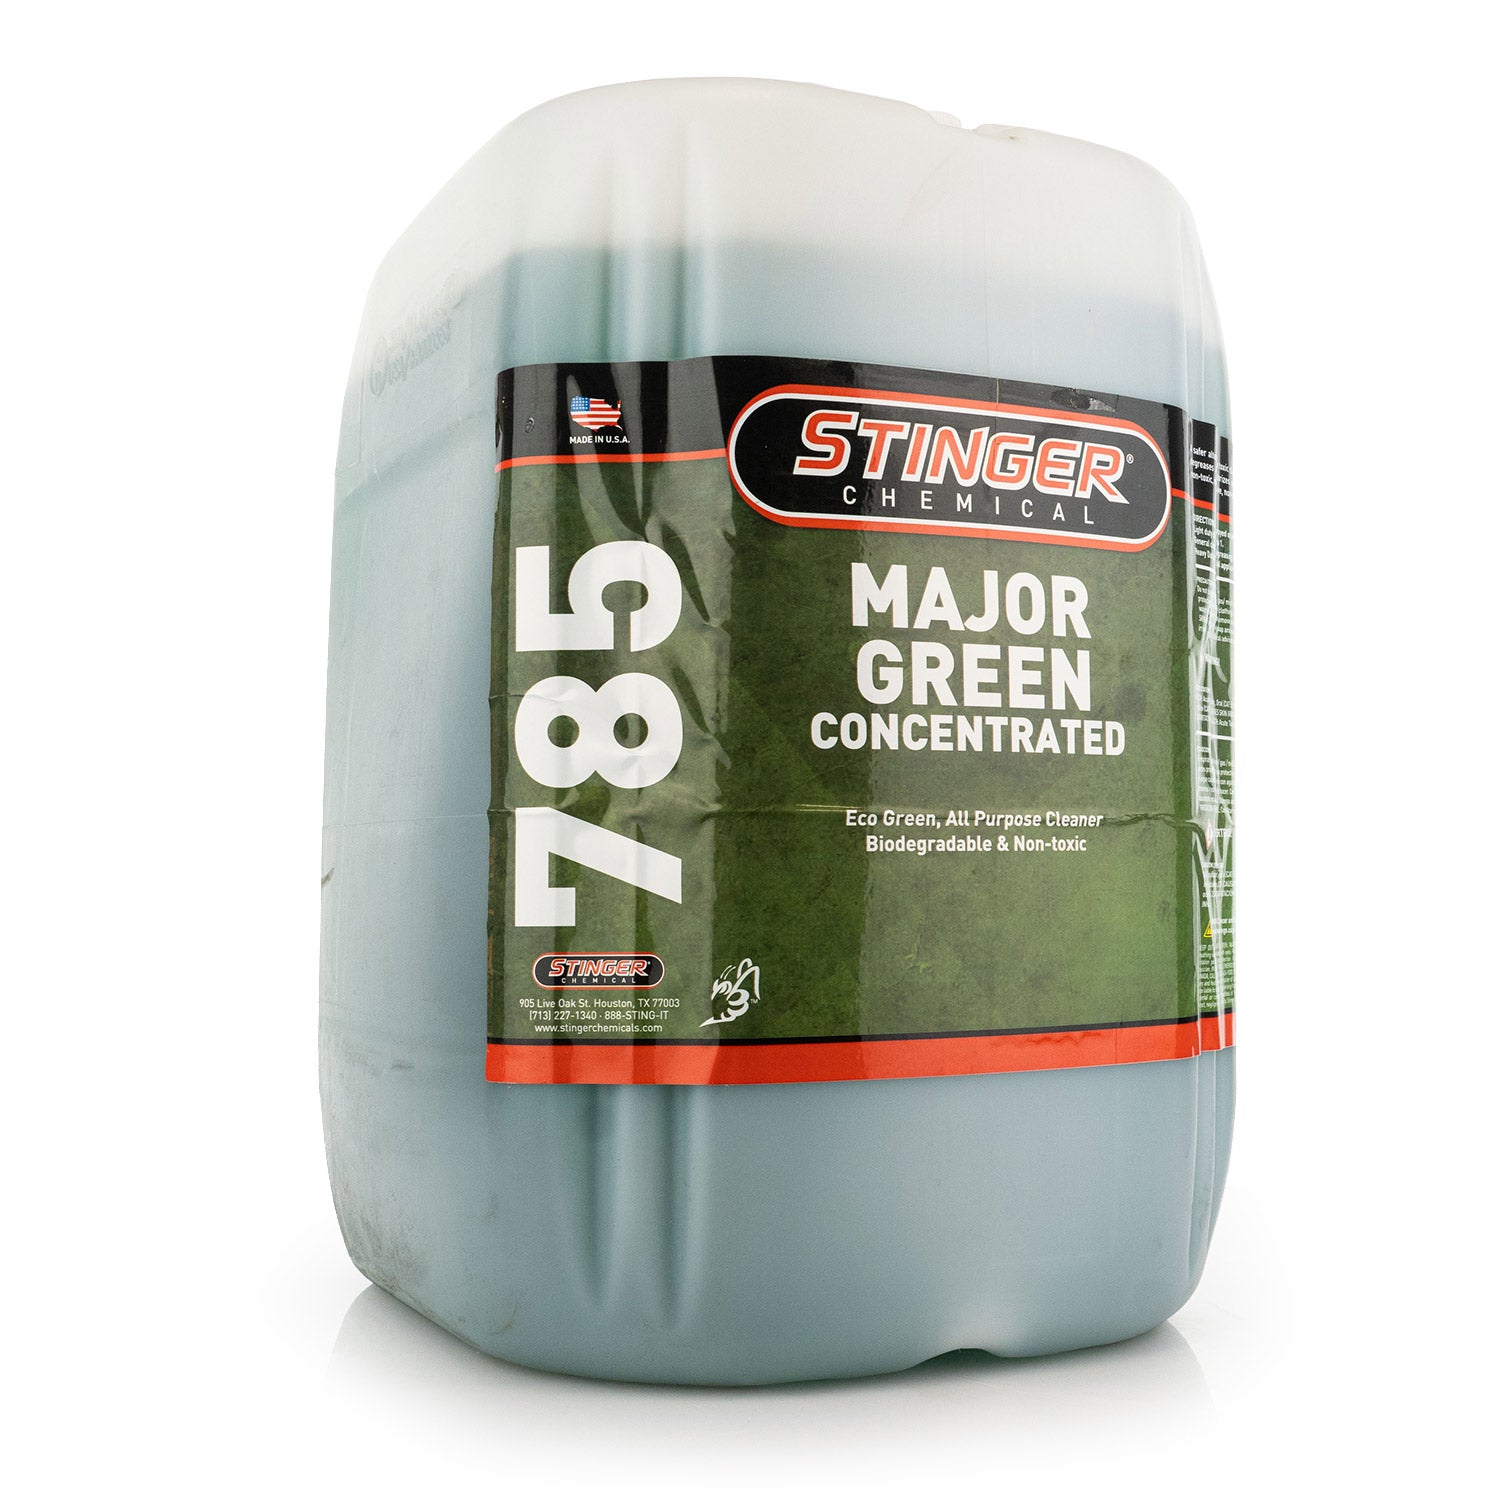 Stinger Chemical Major Green Cleaner